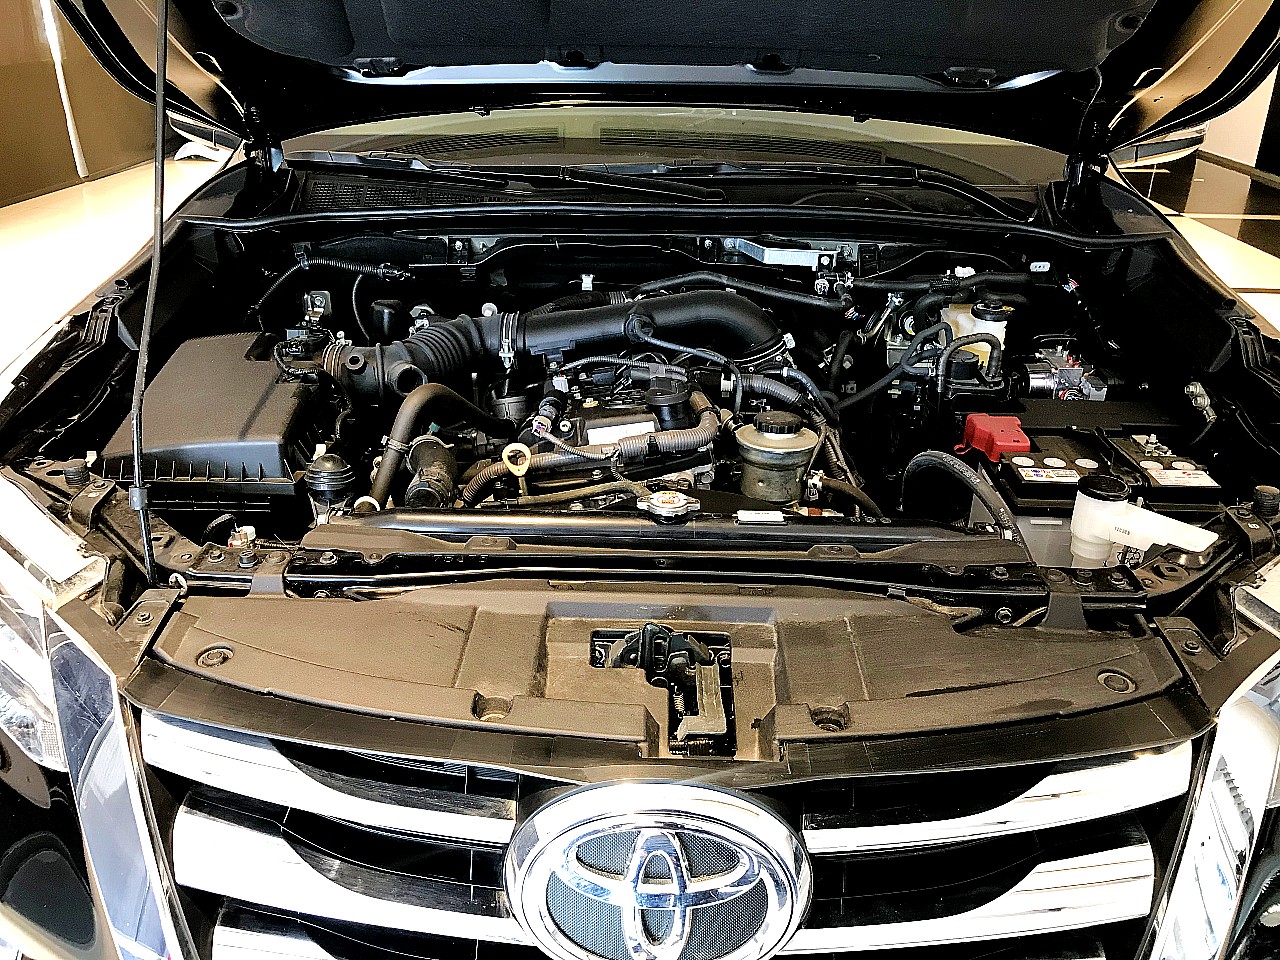 Toyota Fortuner 2019 Model Engine